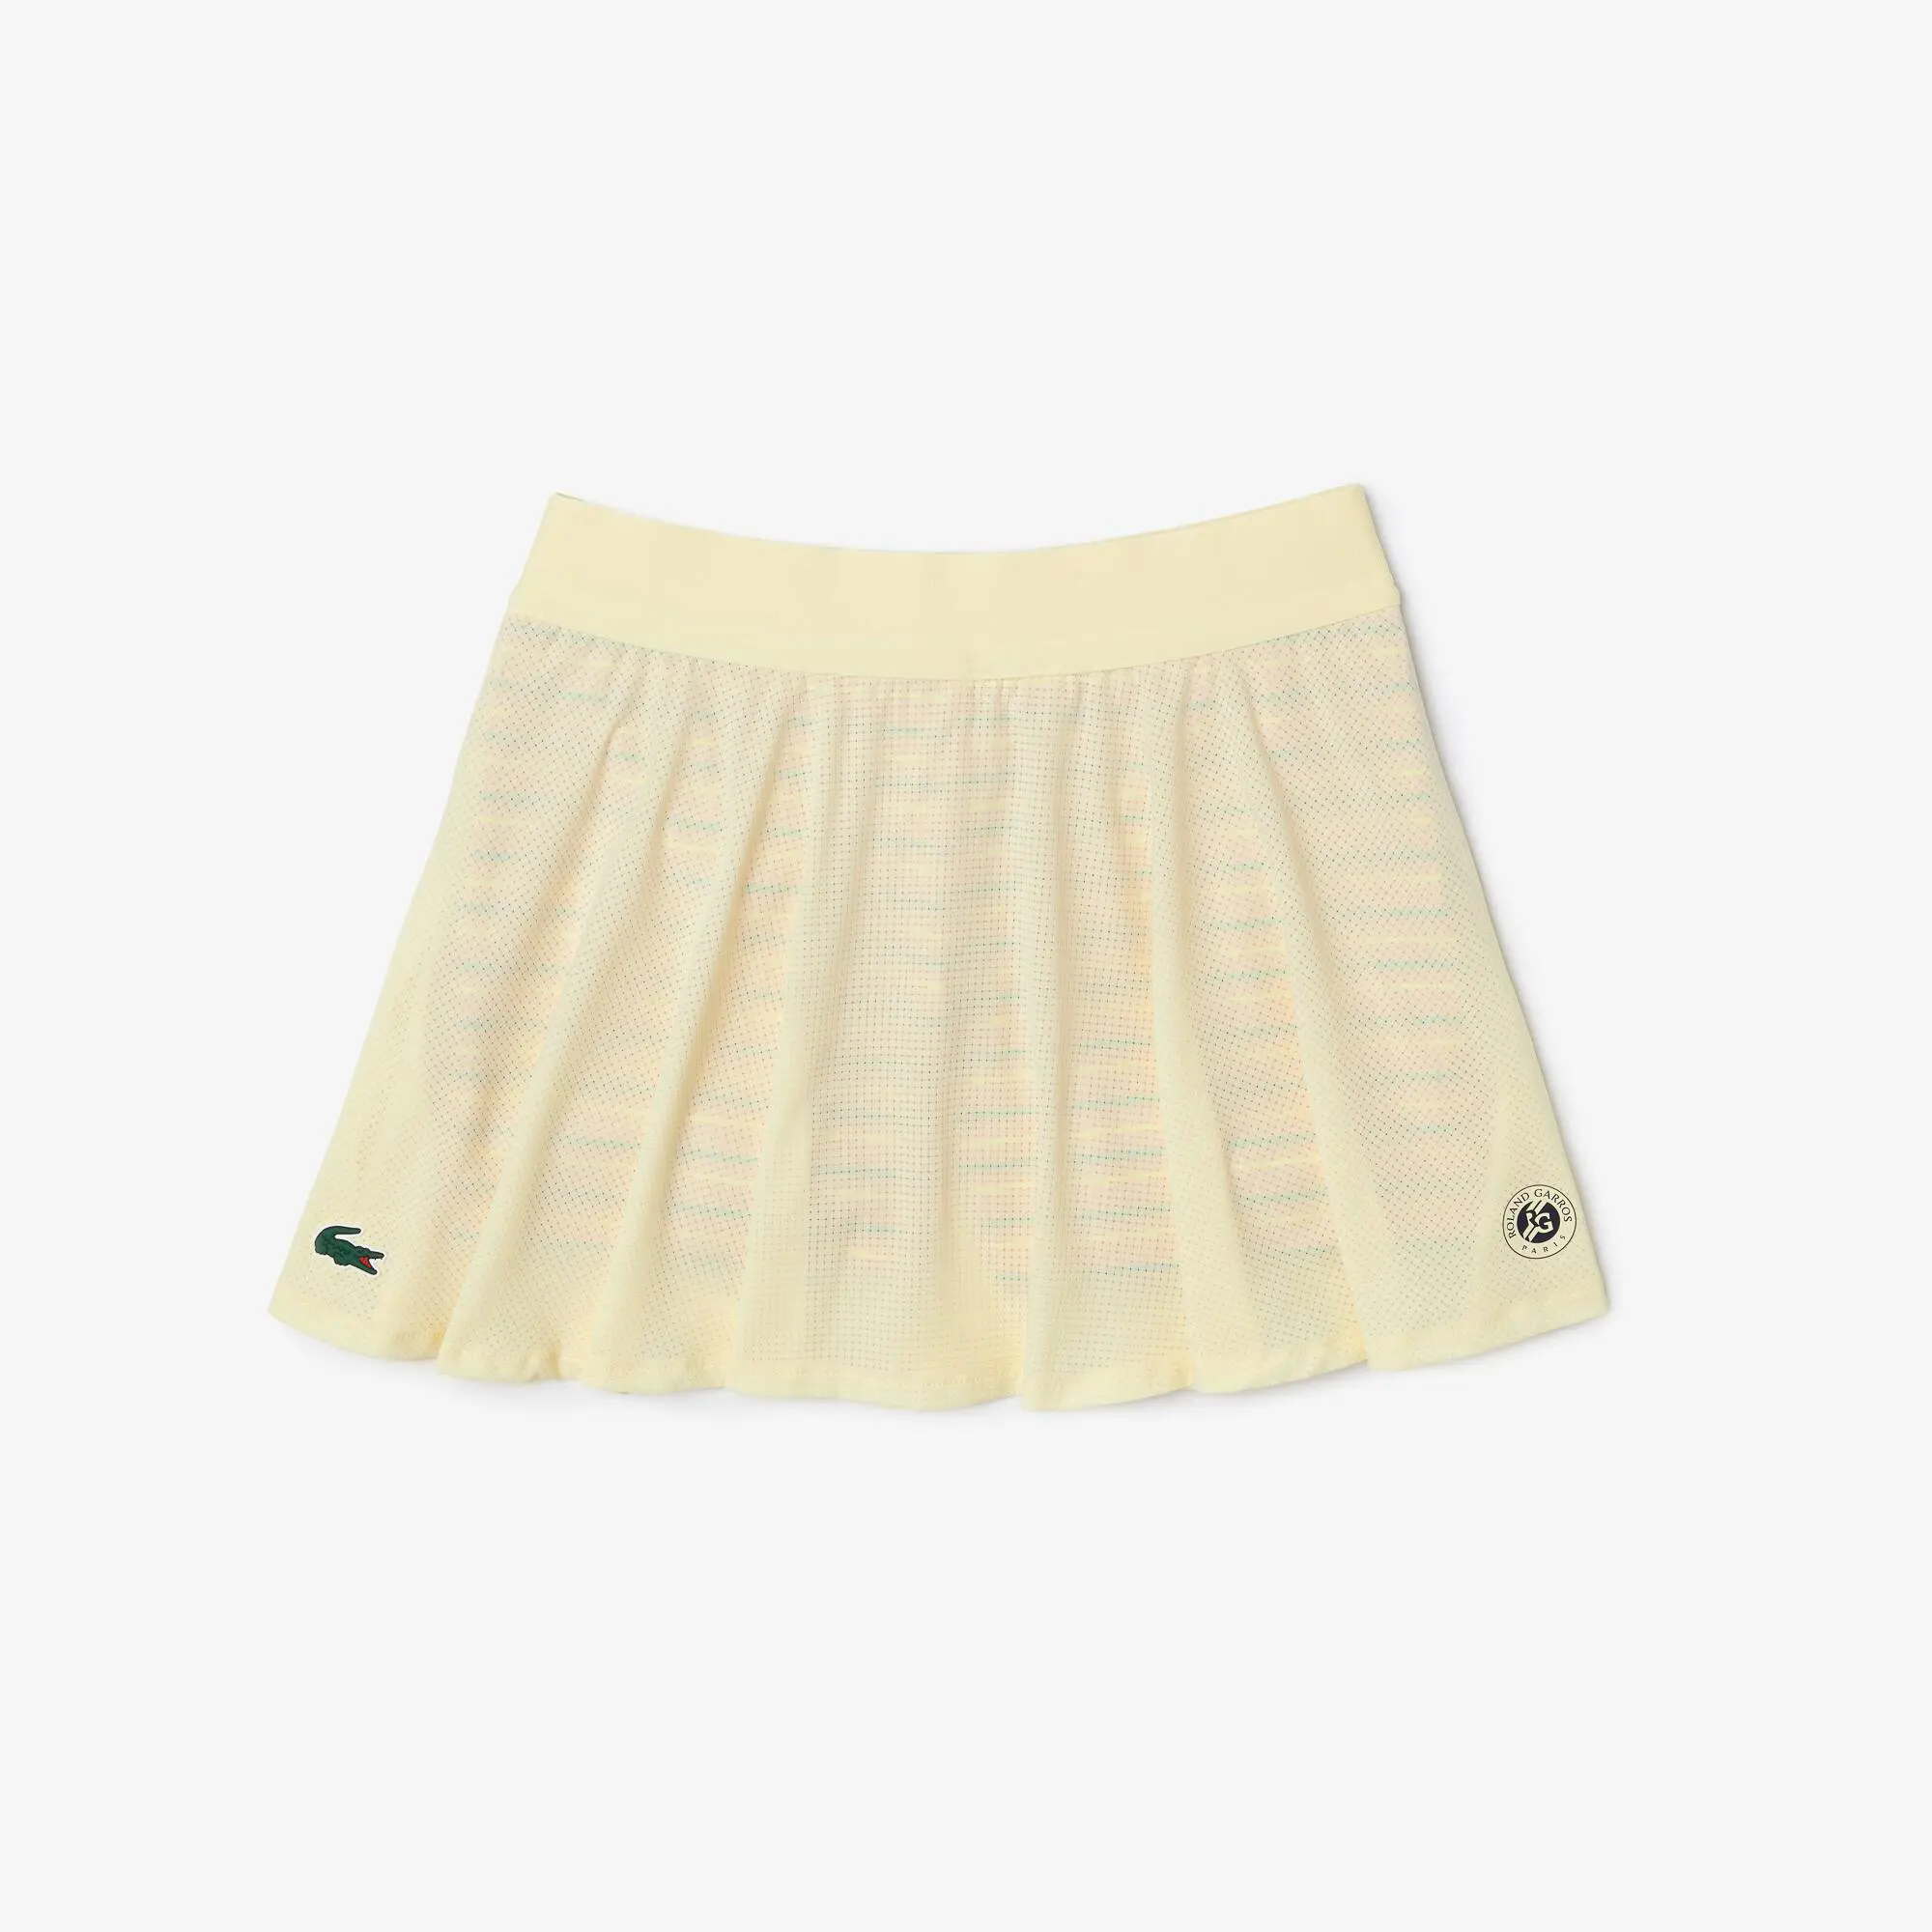 Lacoste Falda deportiva de mujer Roland Garros Edition con pantalón corto incorporado. 2